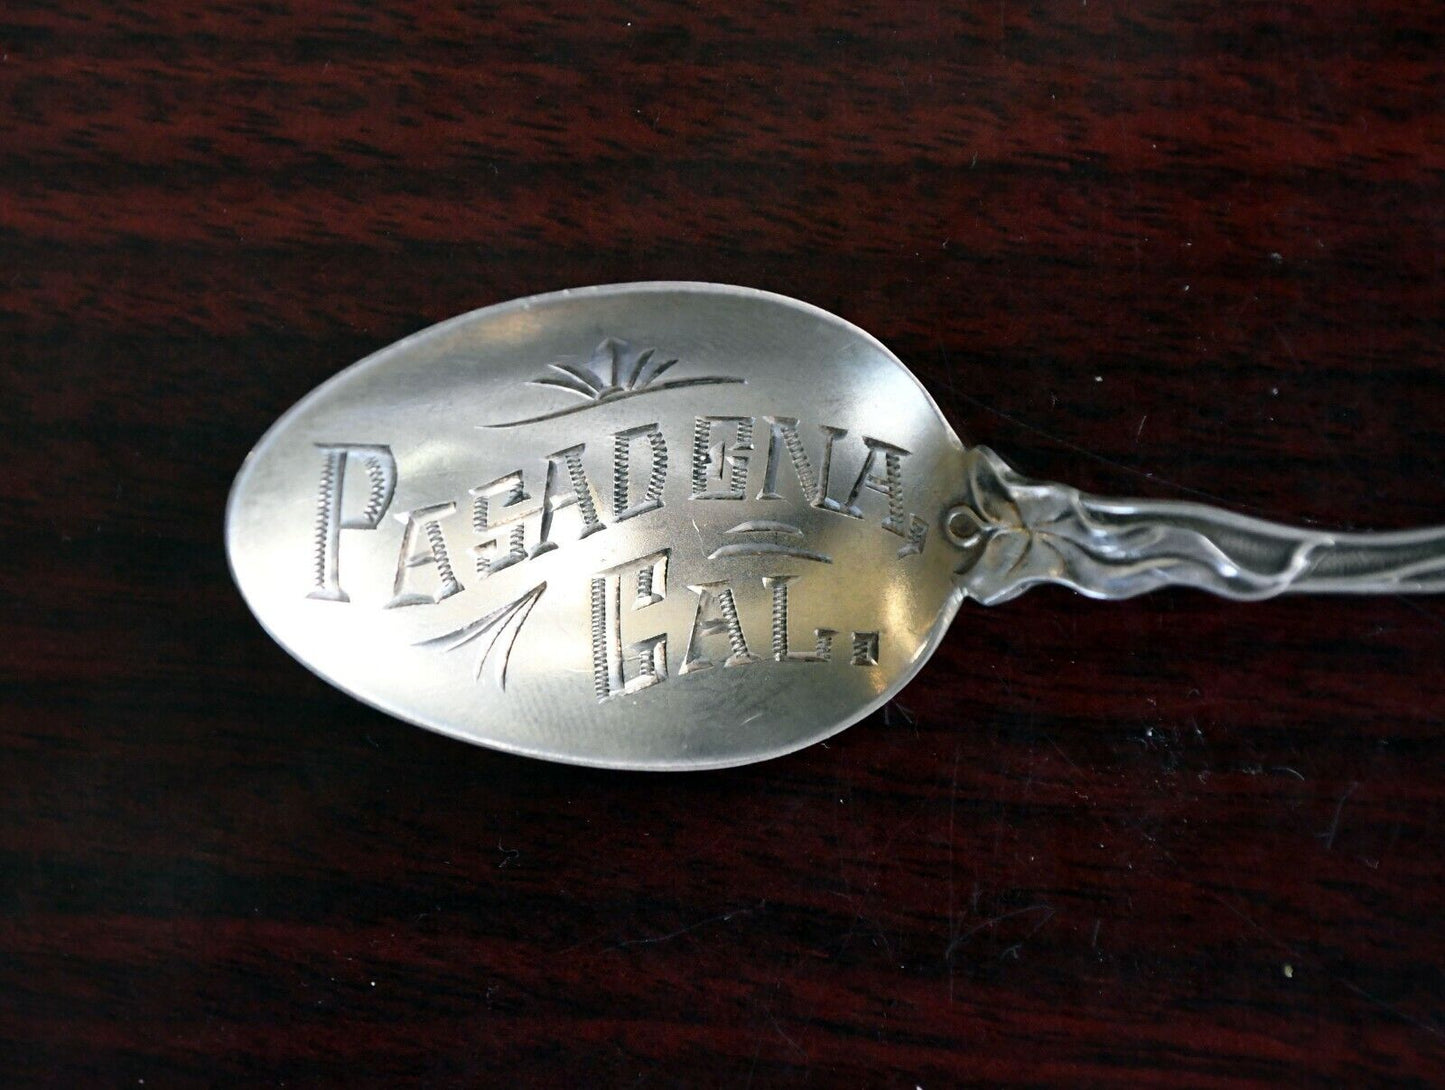 Pasadena California Sterling Silver Souvenir Spoon 5" Paye & Baker .31 oz.